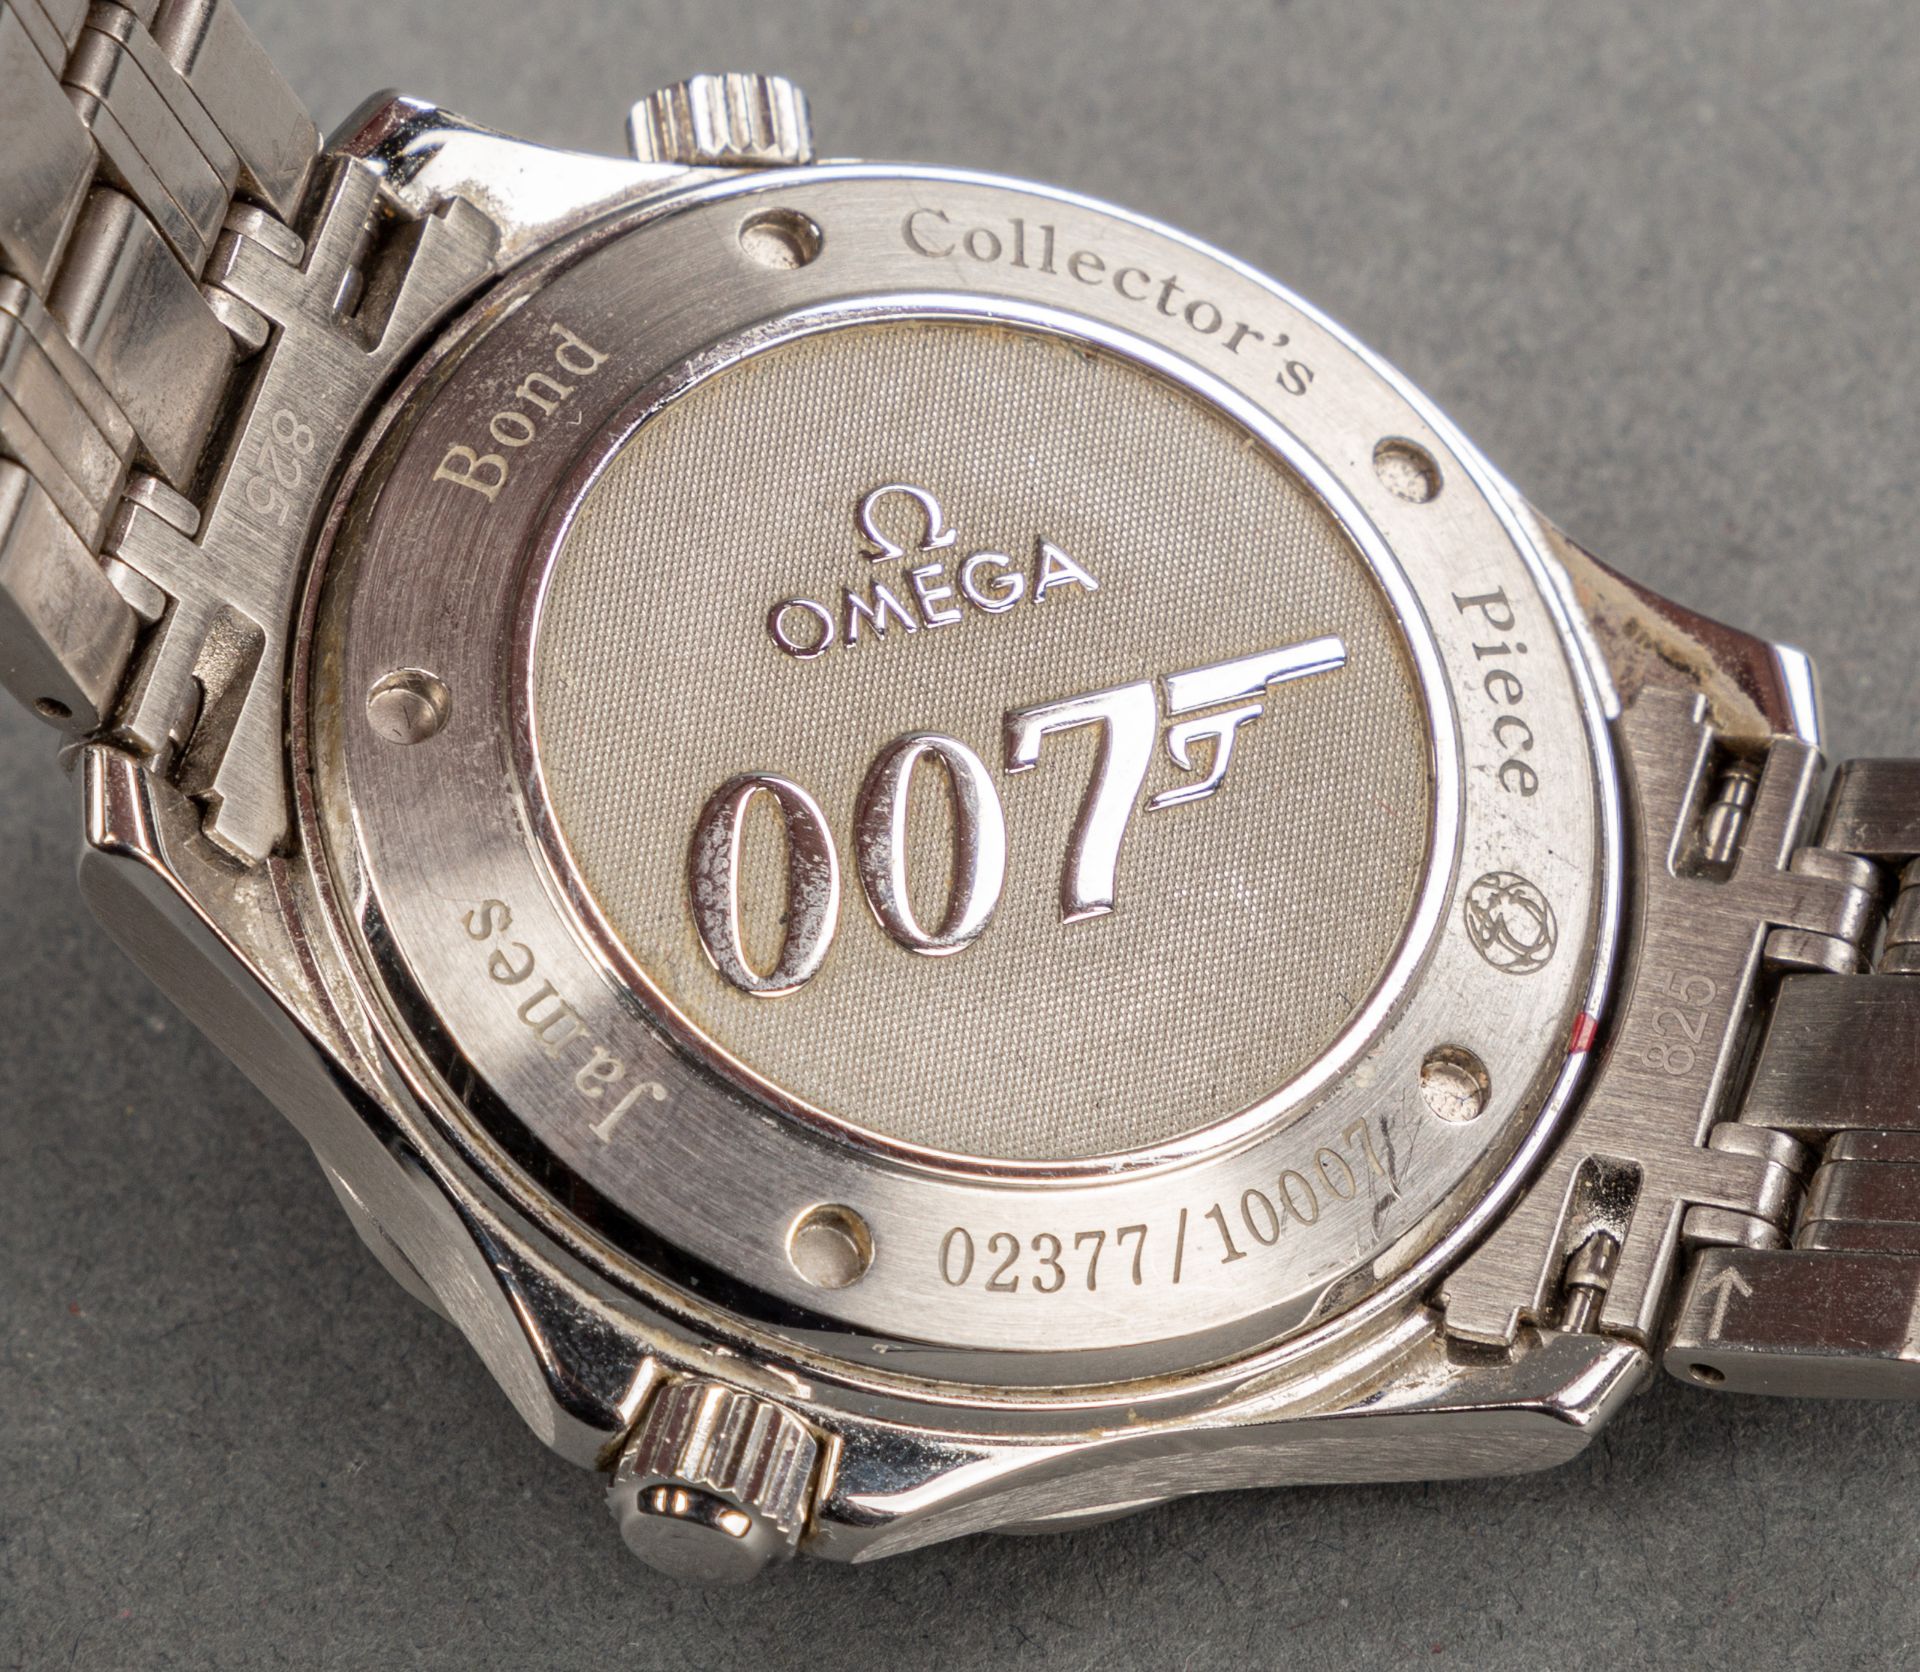 Omega Seamaster Diver 300m James Bond 007 Sonderedition, 2008 - Image 2 of 3